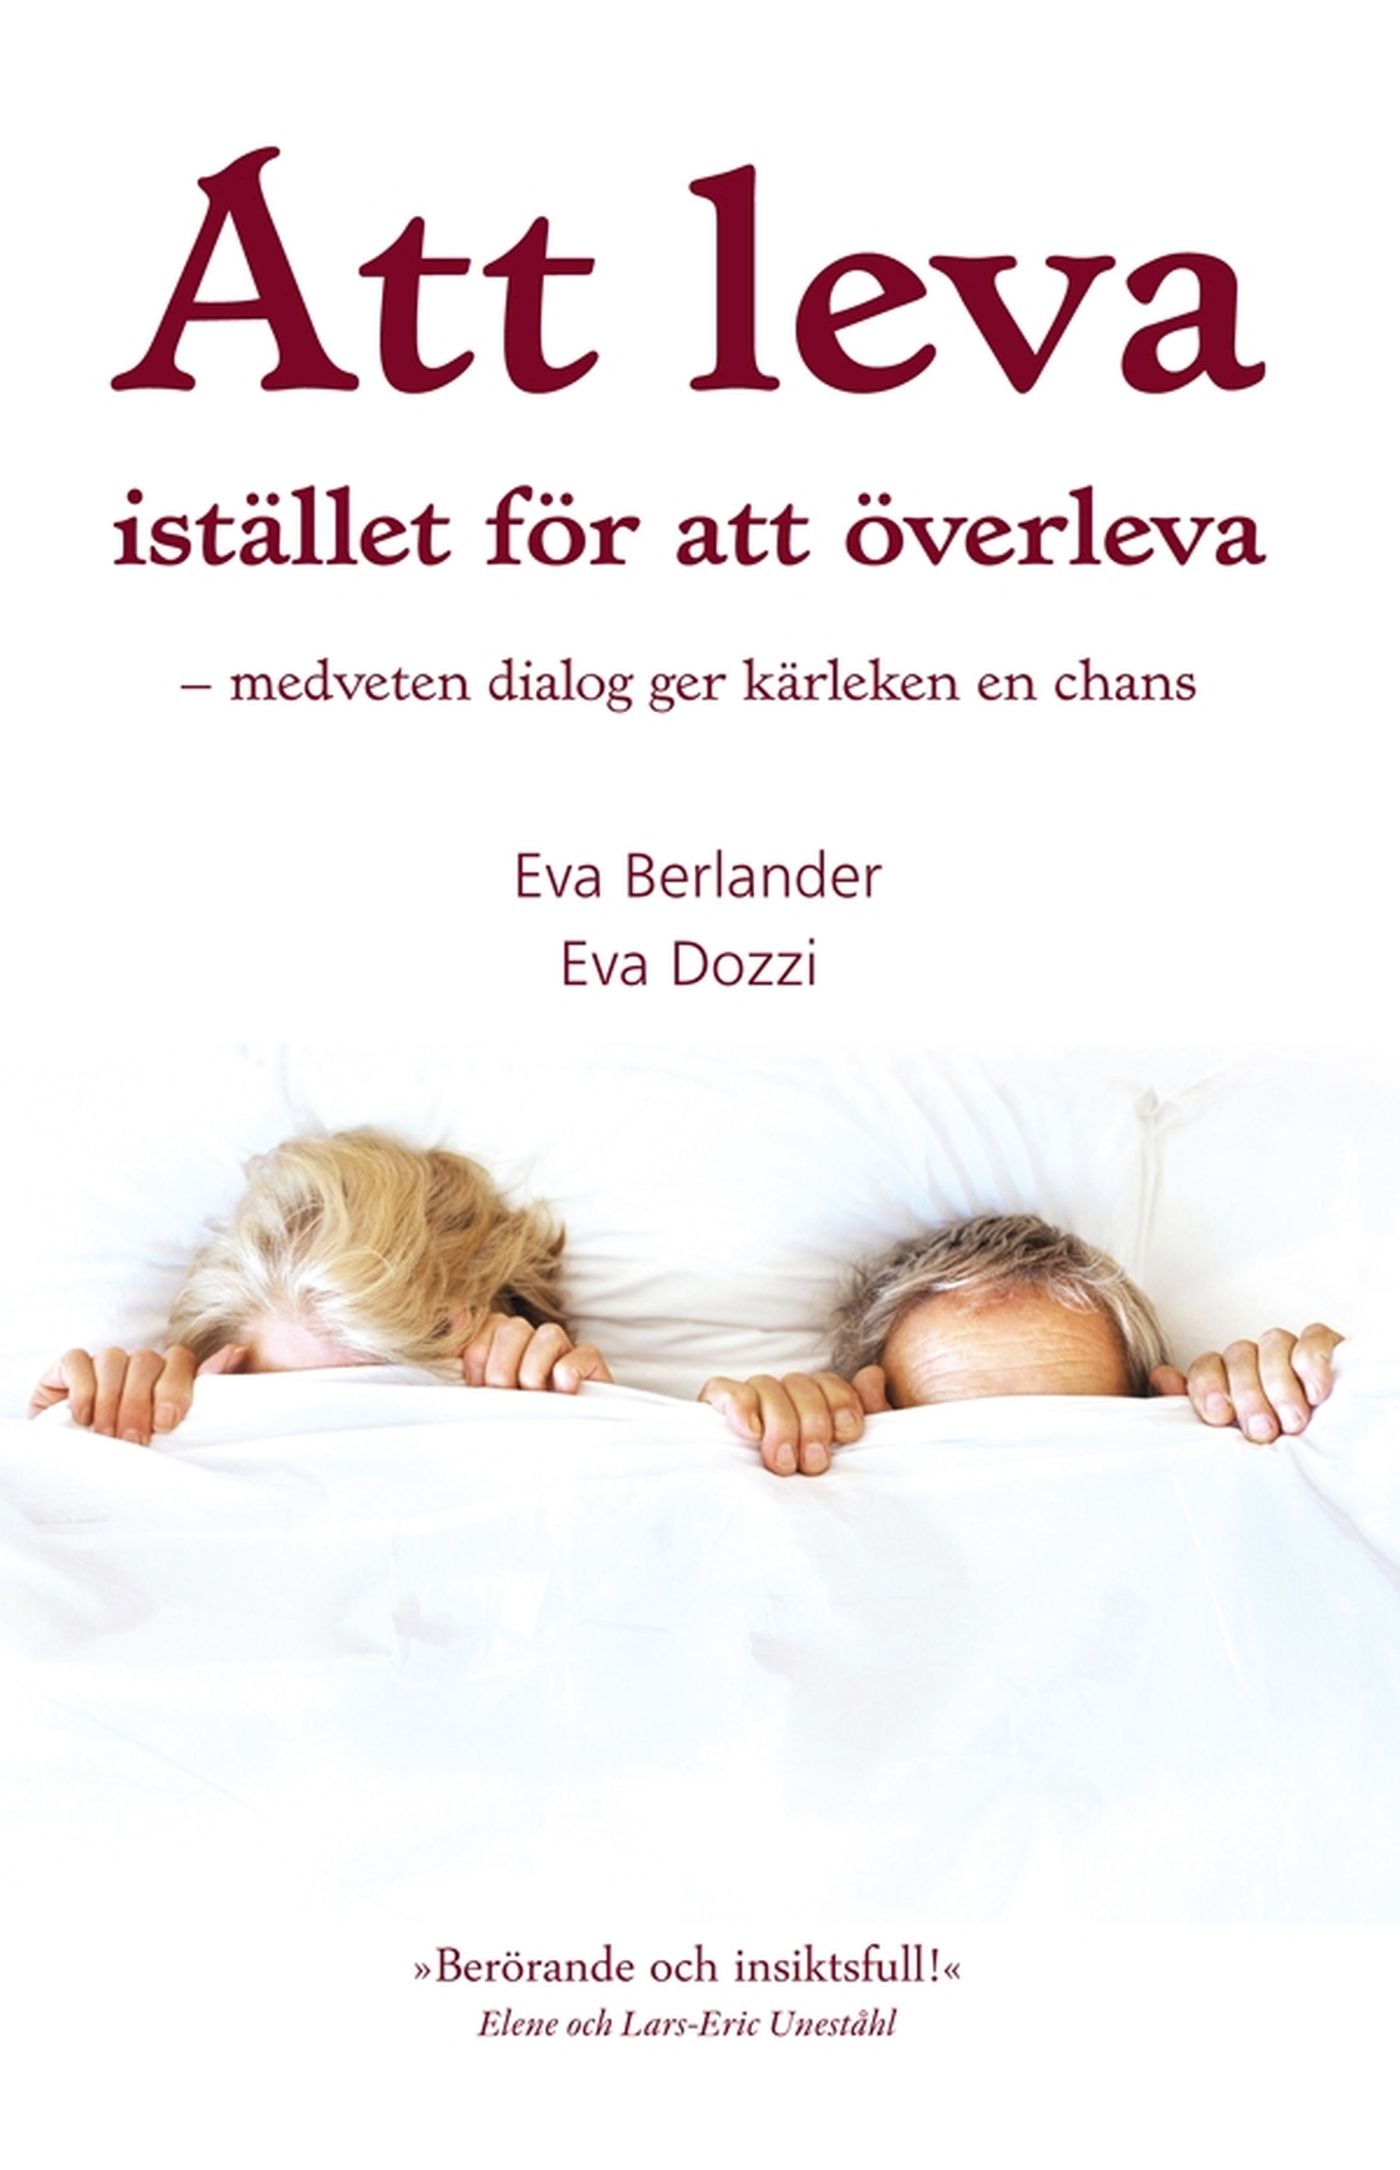 Att leva istället för att överleva, e-bok av Eva Berlander